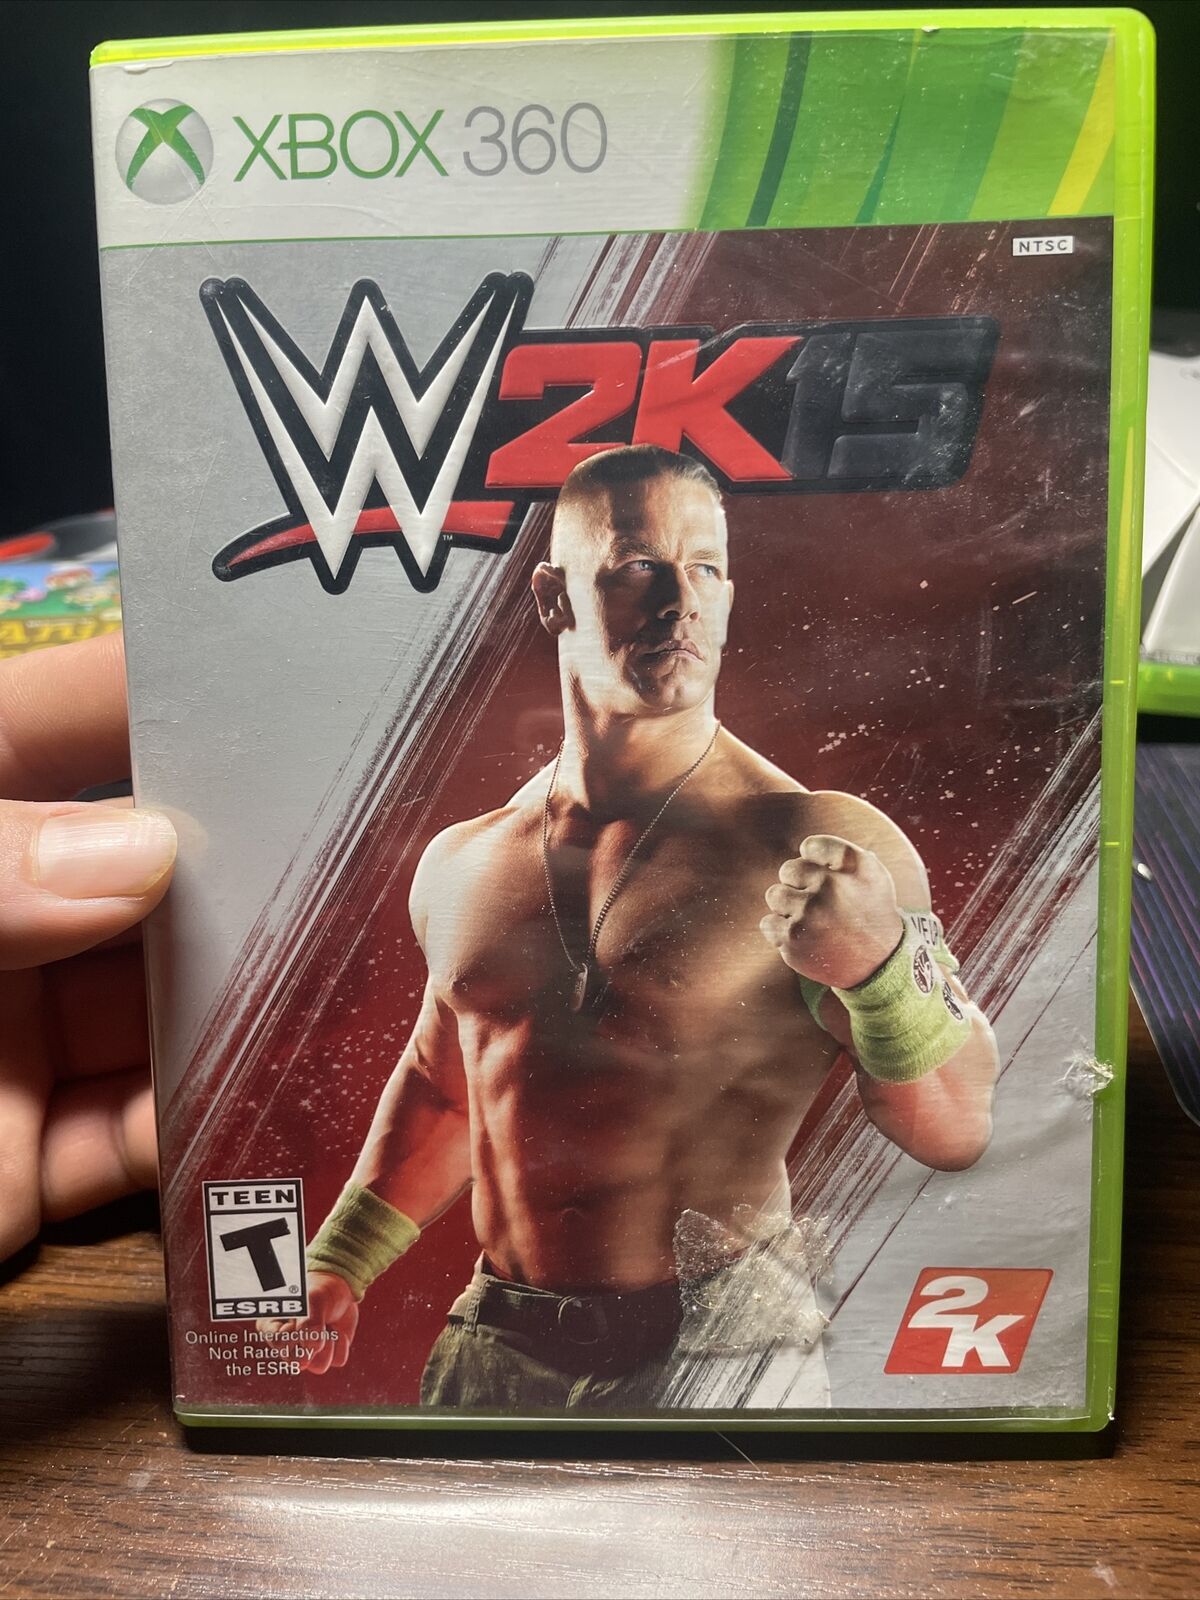 doorgaan Opsplitsen invoegen WWE 2k15 Xbox 360 wrestling CIB with manual John Cena 710425494284 | eBay